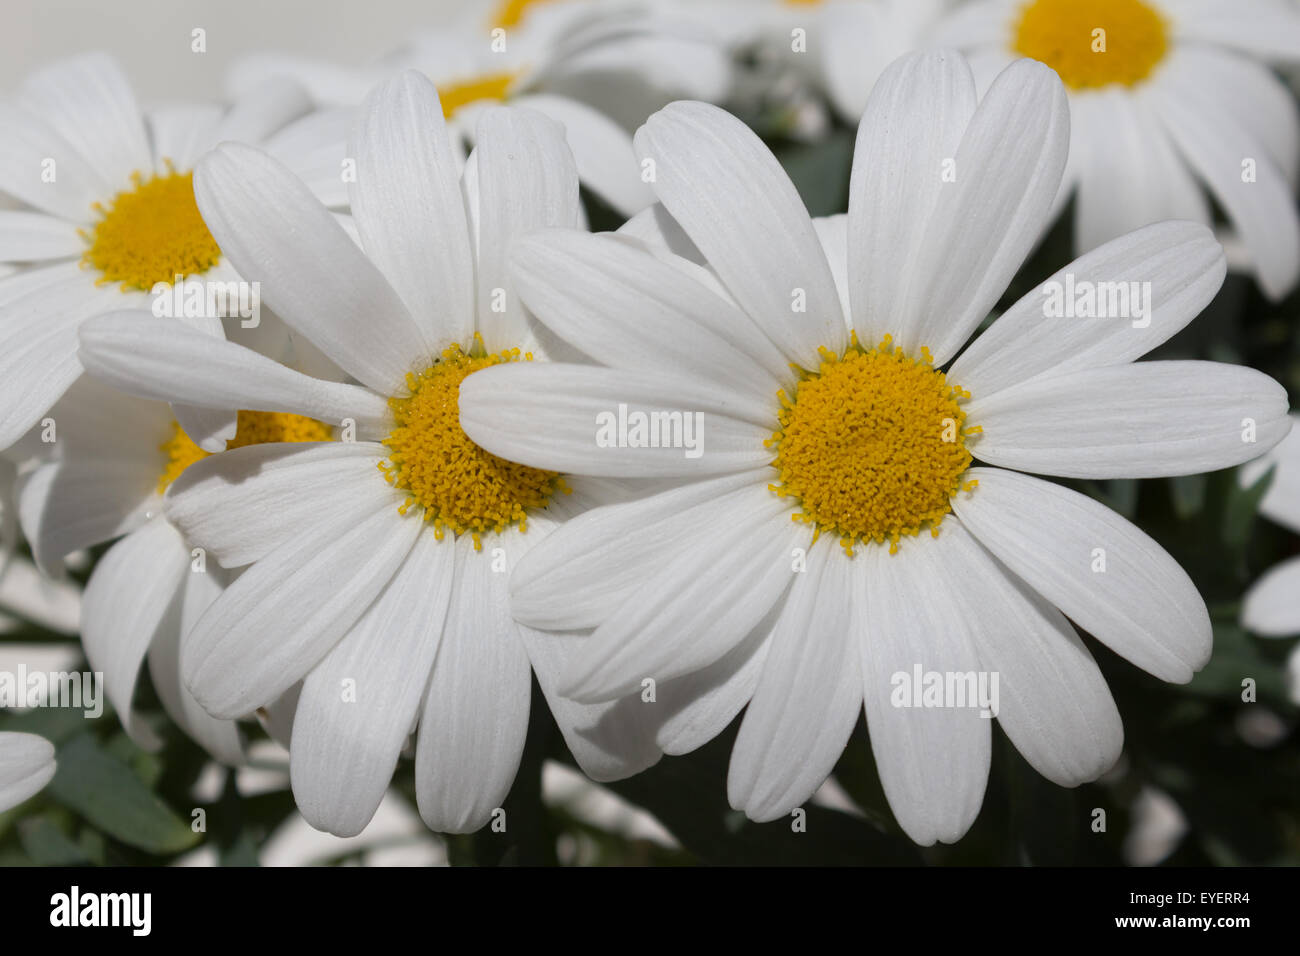 Blumen-Gänseblümchen hautnah - weiße Margeriten Blumen / Kamille Stockfoto